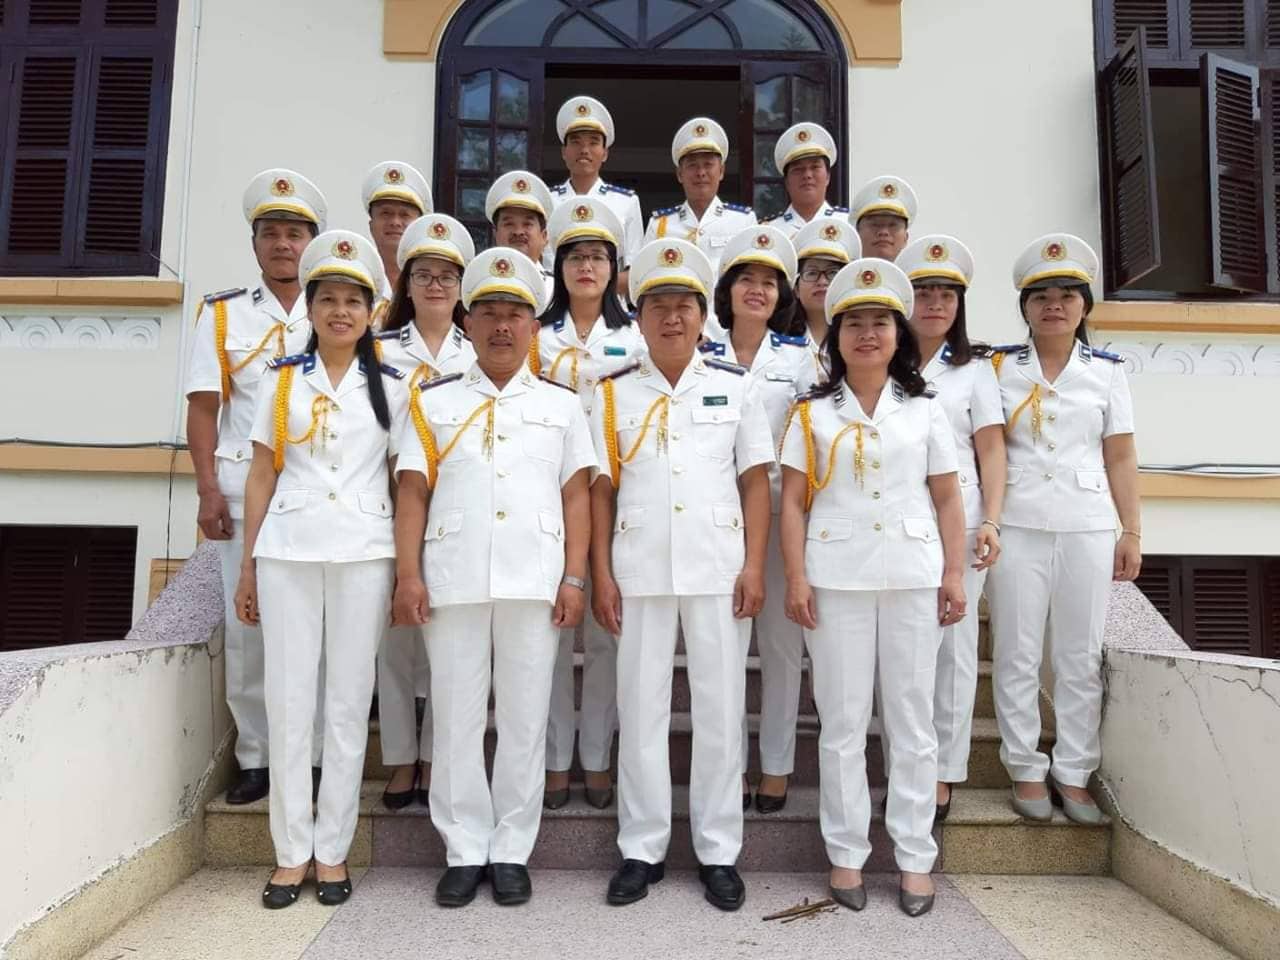 Cục Thi hành án Dân sự (THADS) tỉnh Lâm Đồng tổ chức Gặp mặt kỷ niệm 73 năm Ngày truyền thống ngành THADS Việt Nam (19/7/1946 - 19/7/2019).